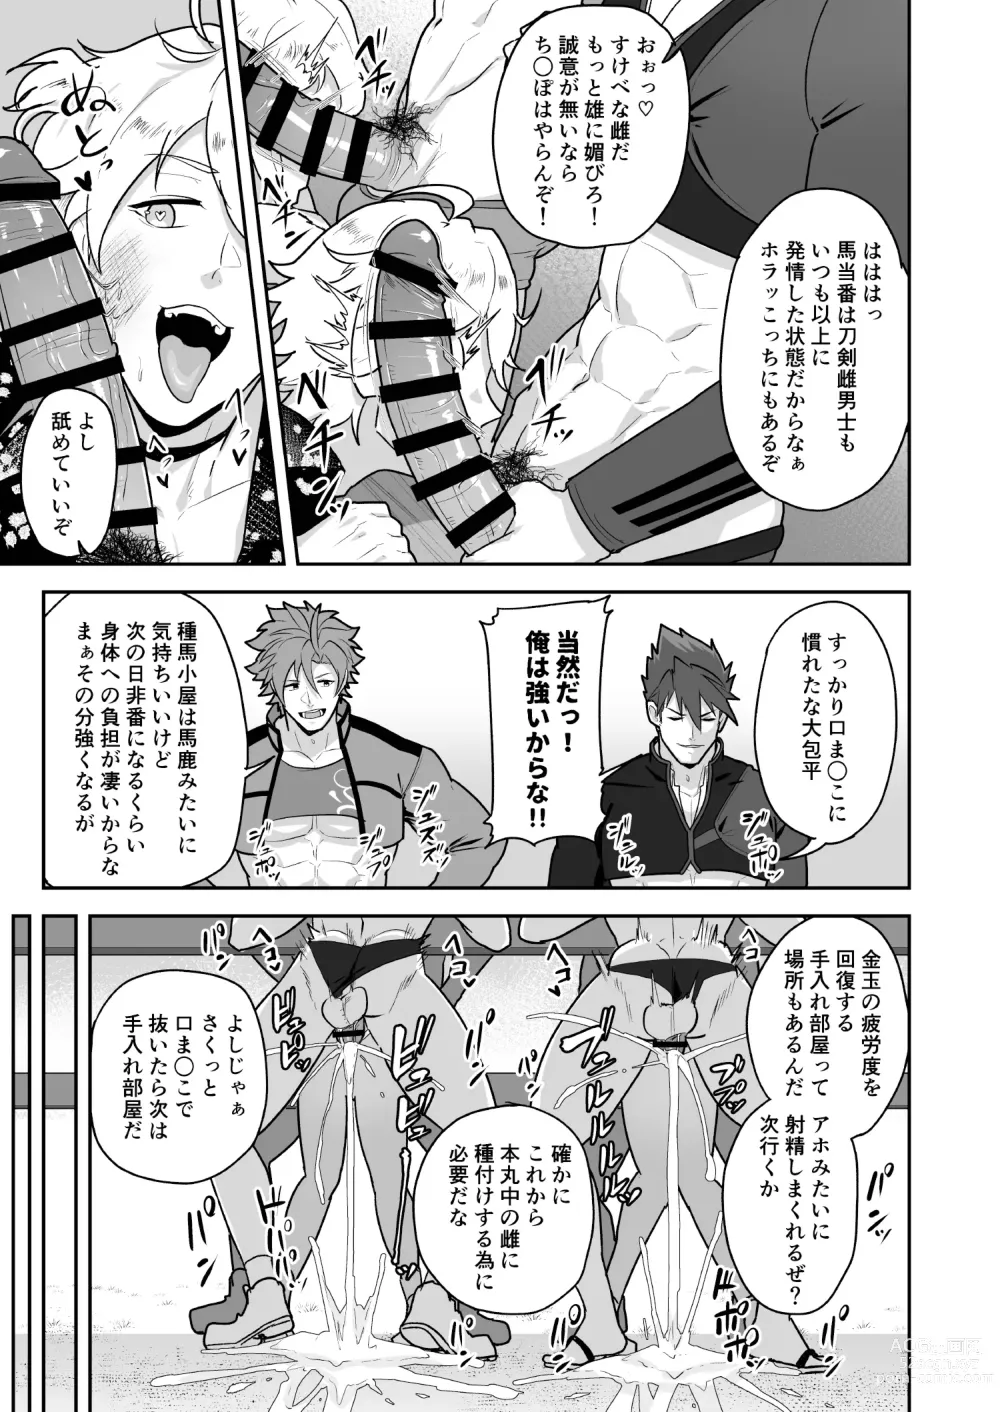 Page 13 of doujinshi Toaru Osu Danshi